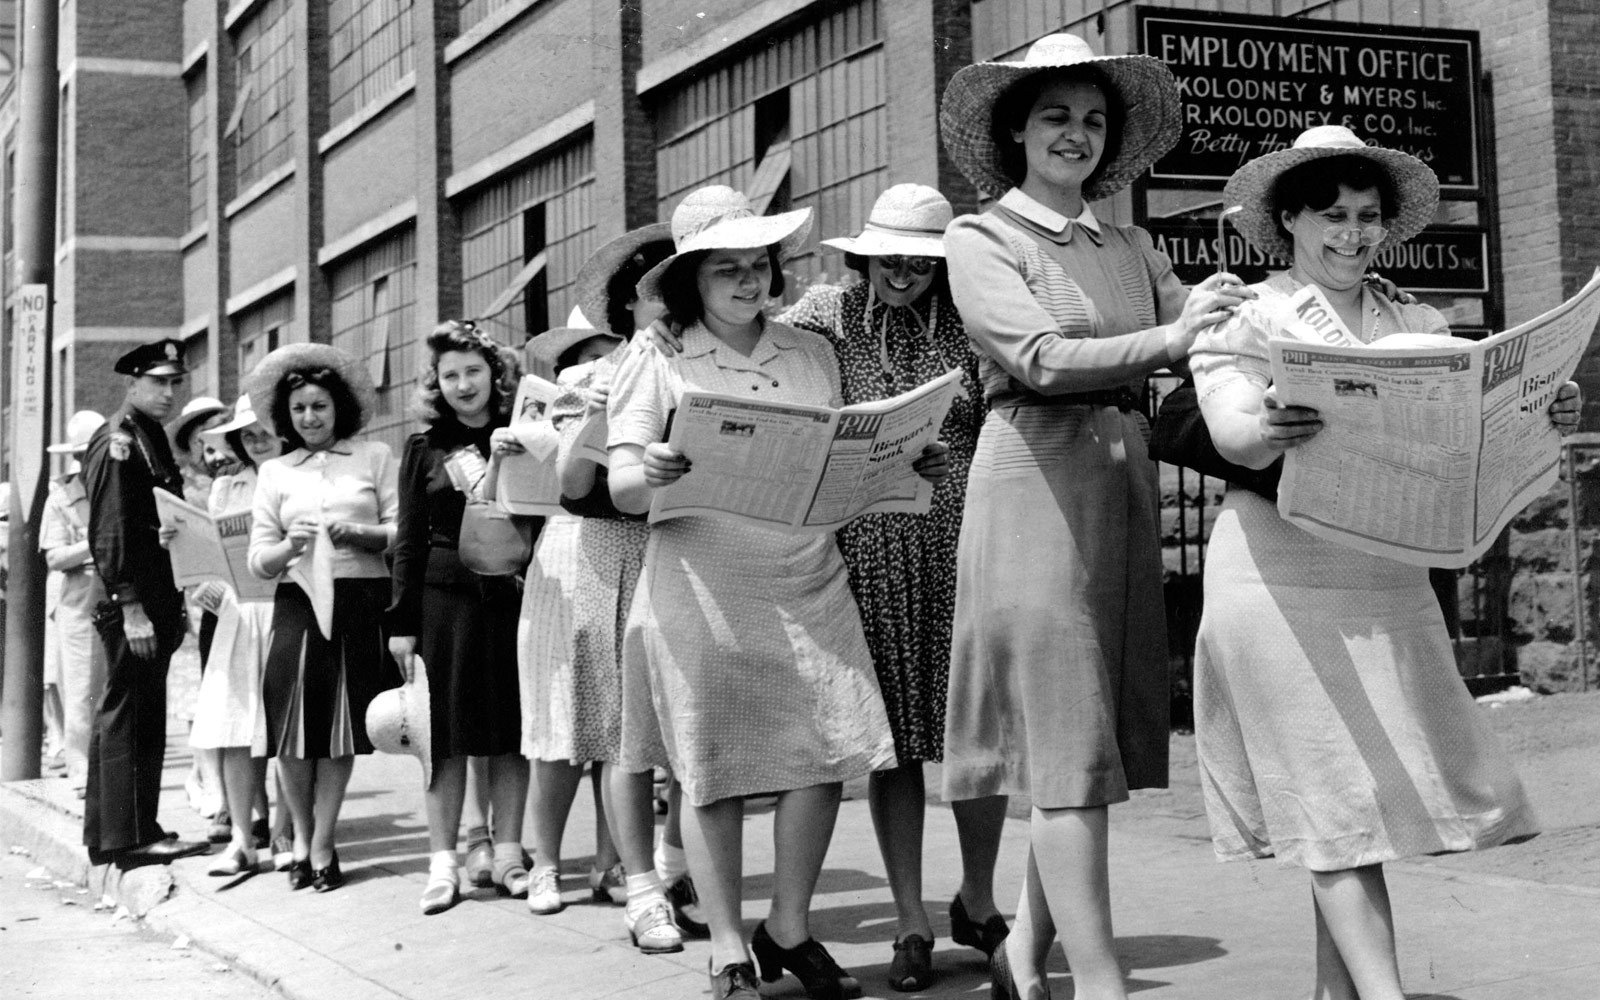 Dones d'un piquet en fila llegint el diari.